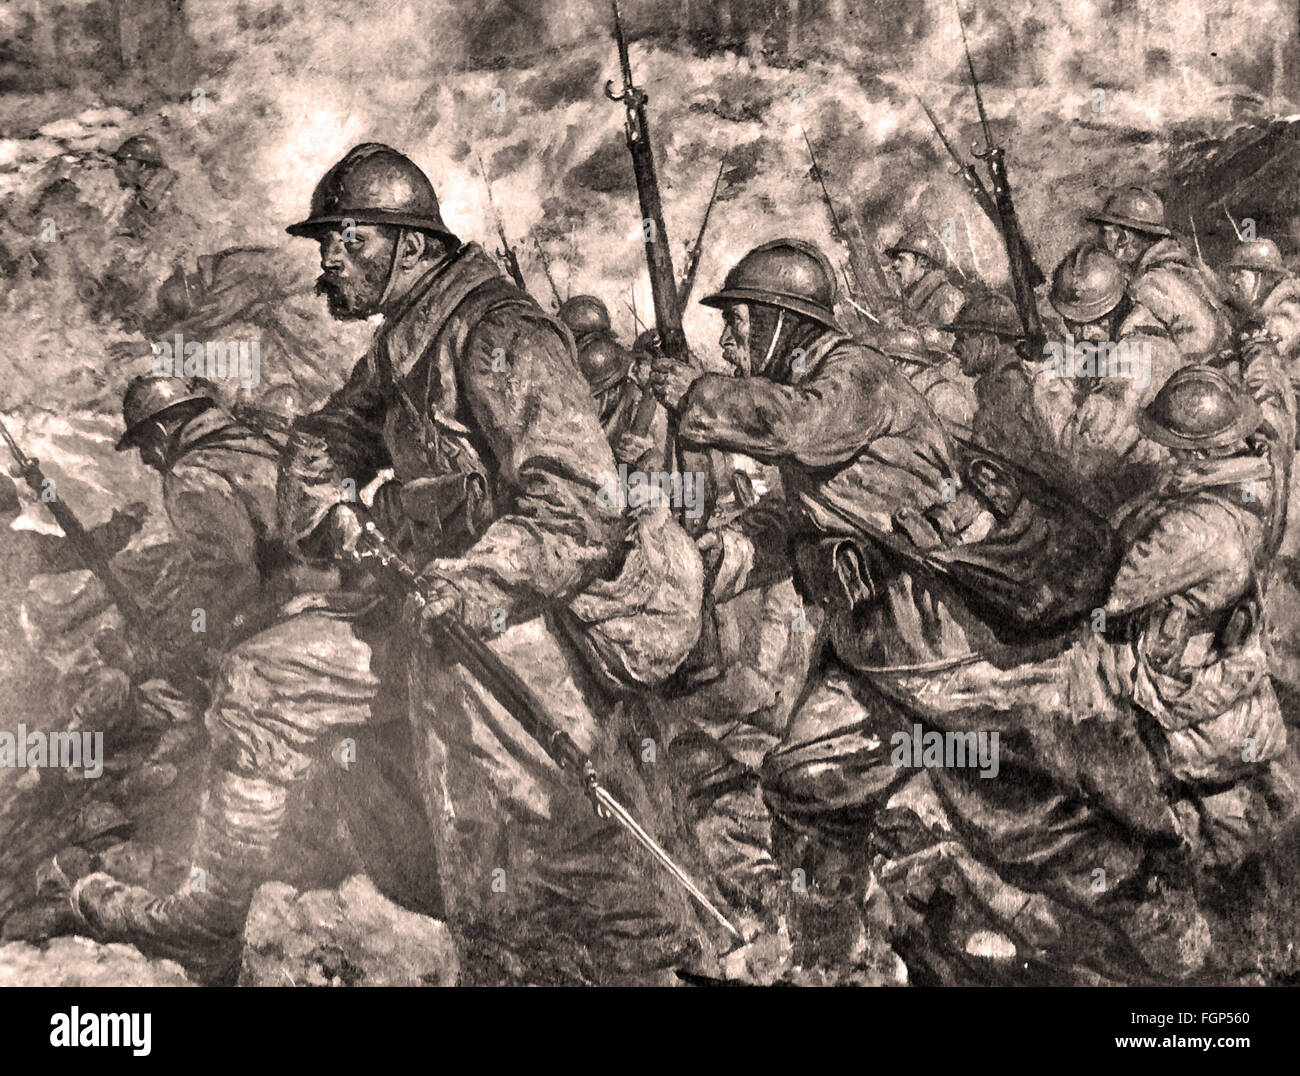 Battle of Verdun 1916 - The assault - Engraving Stock Photo